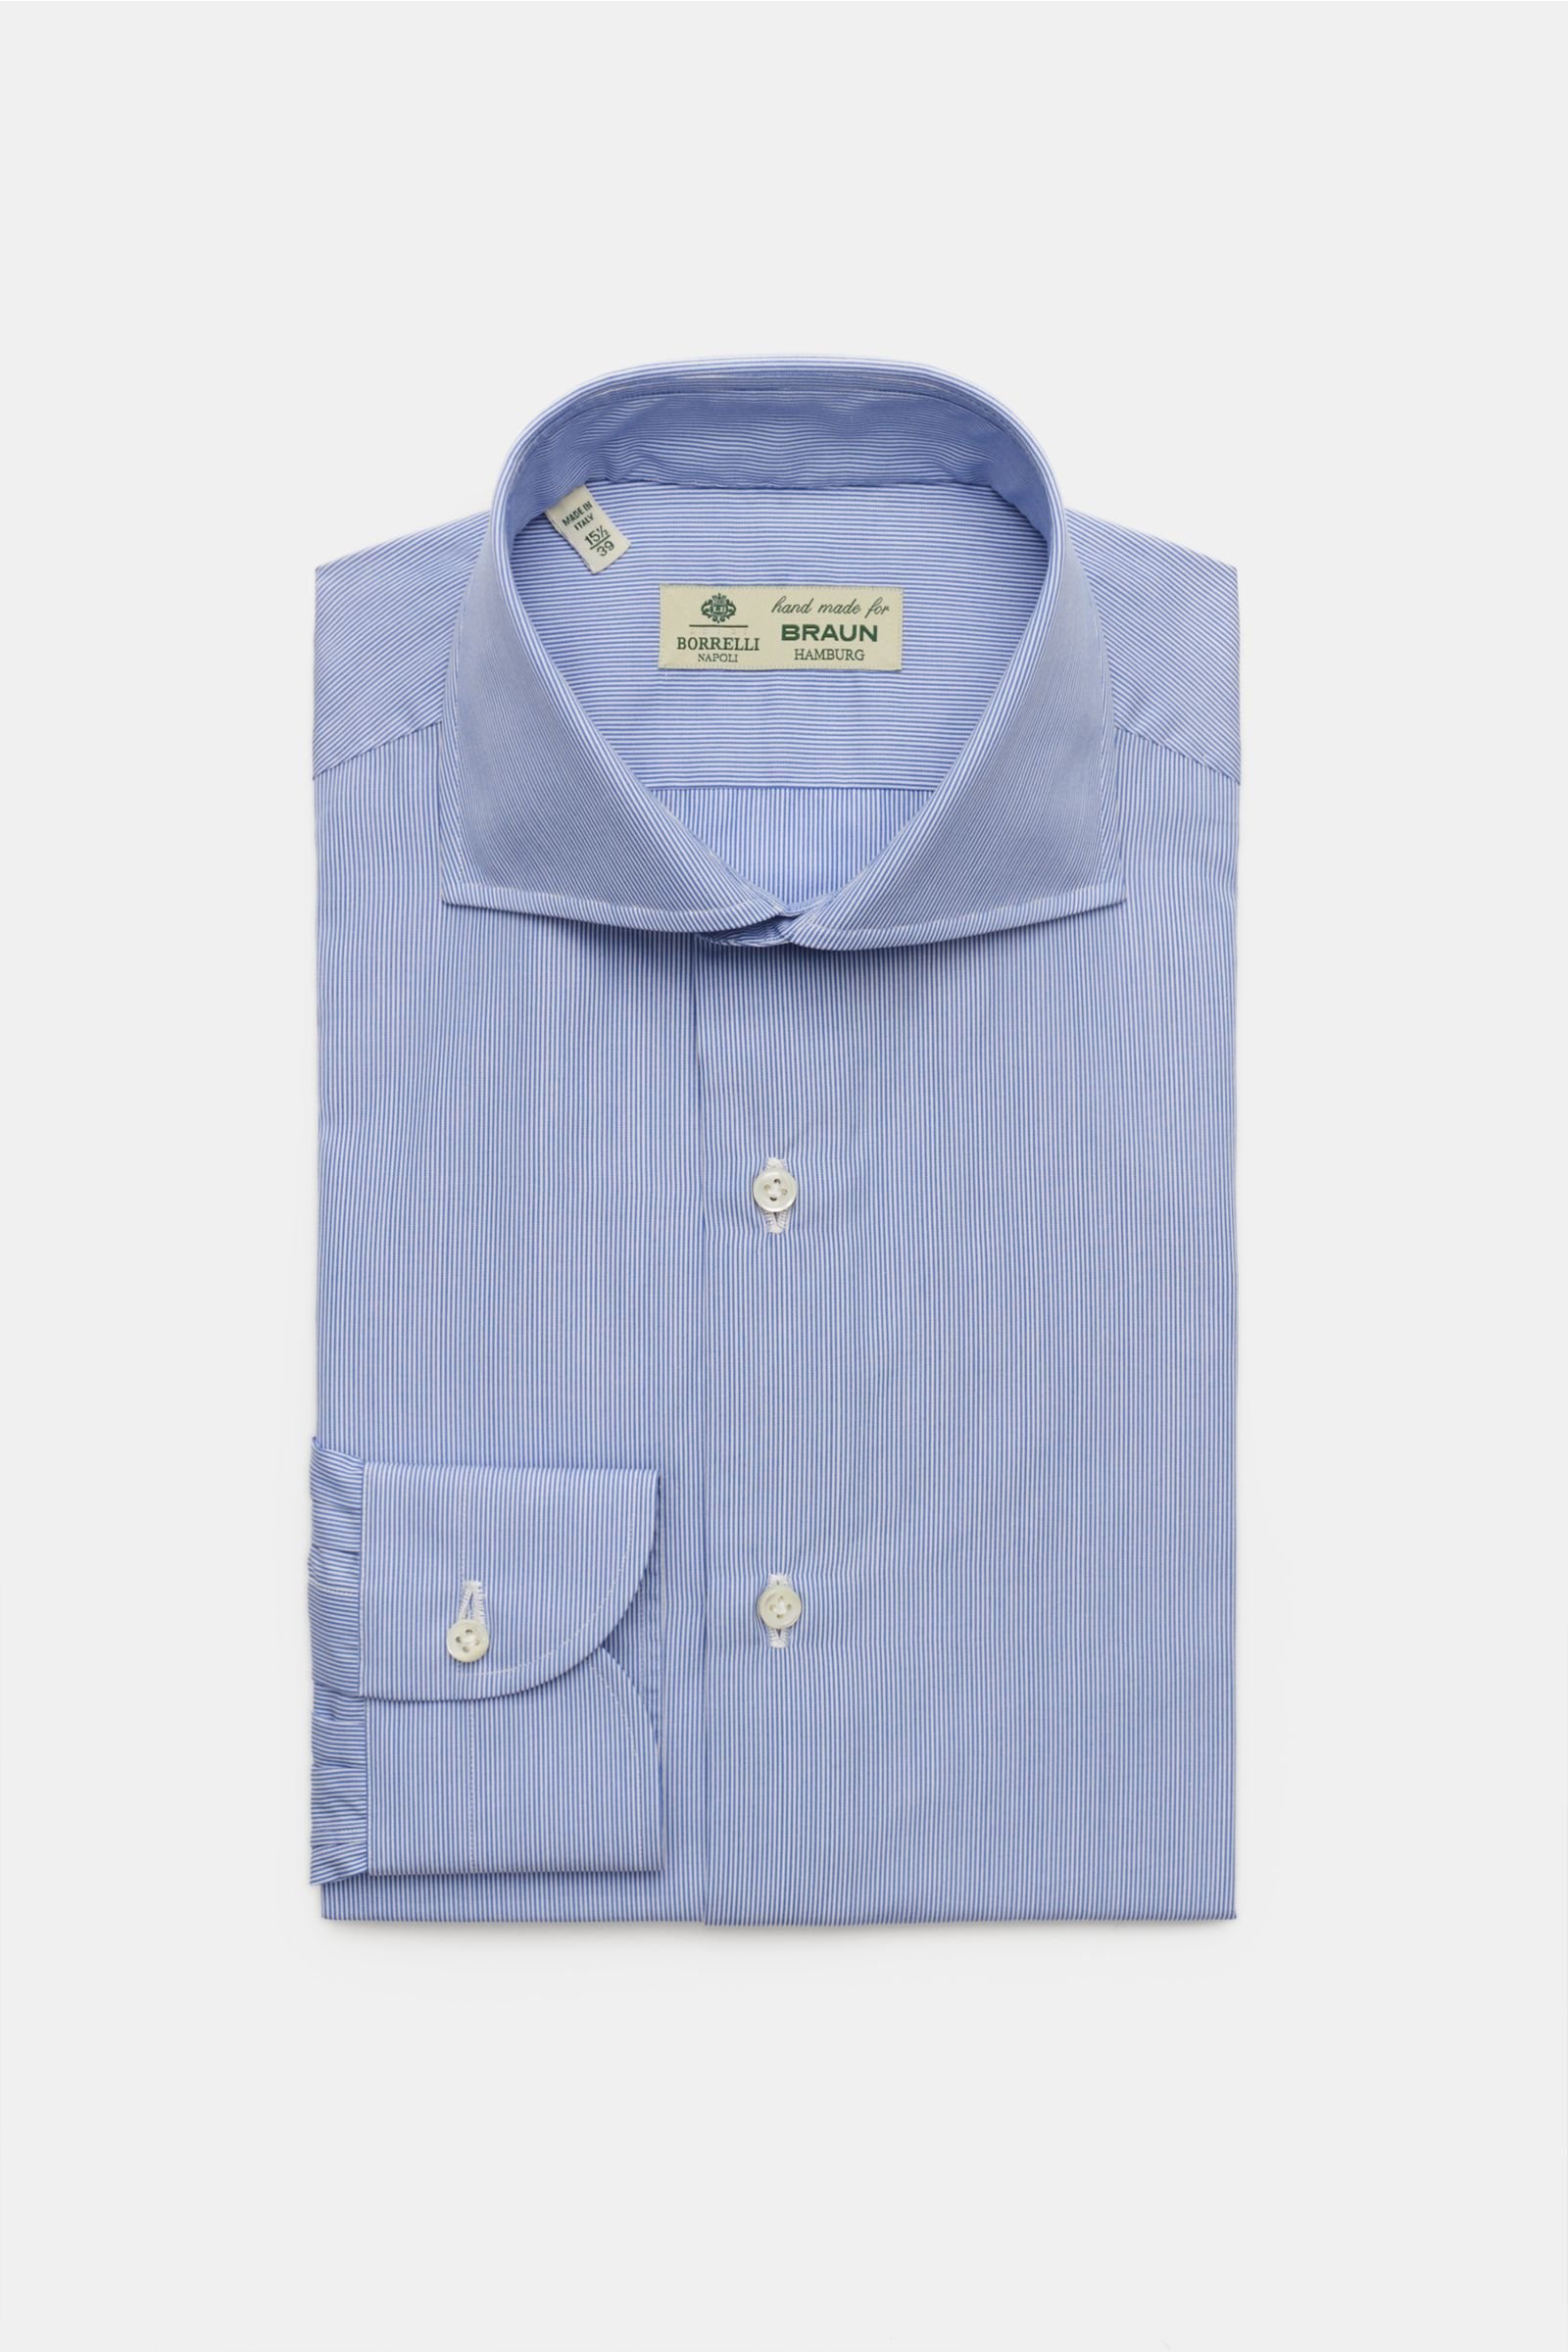 Business shirt 'Nando' shark collar smoky blue/white striped